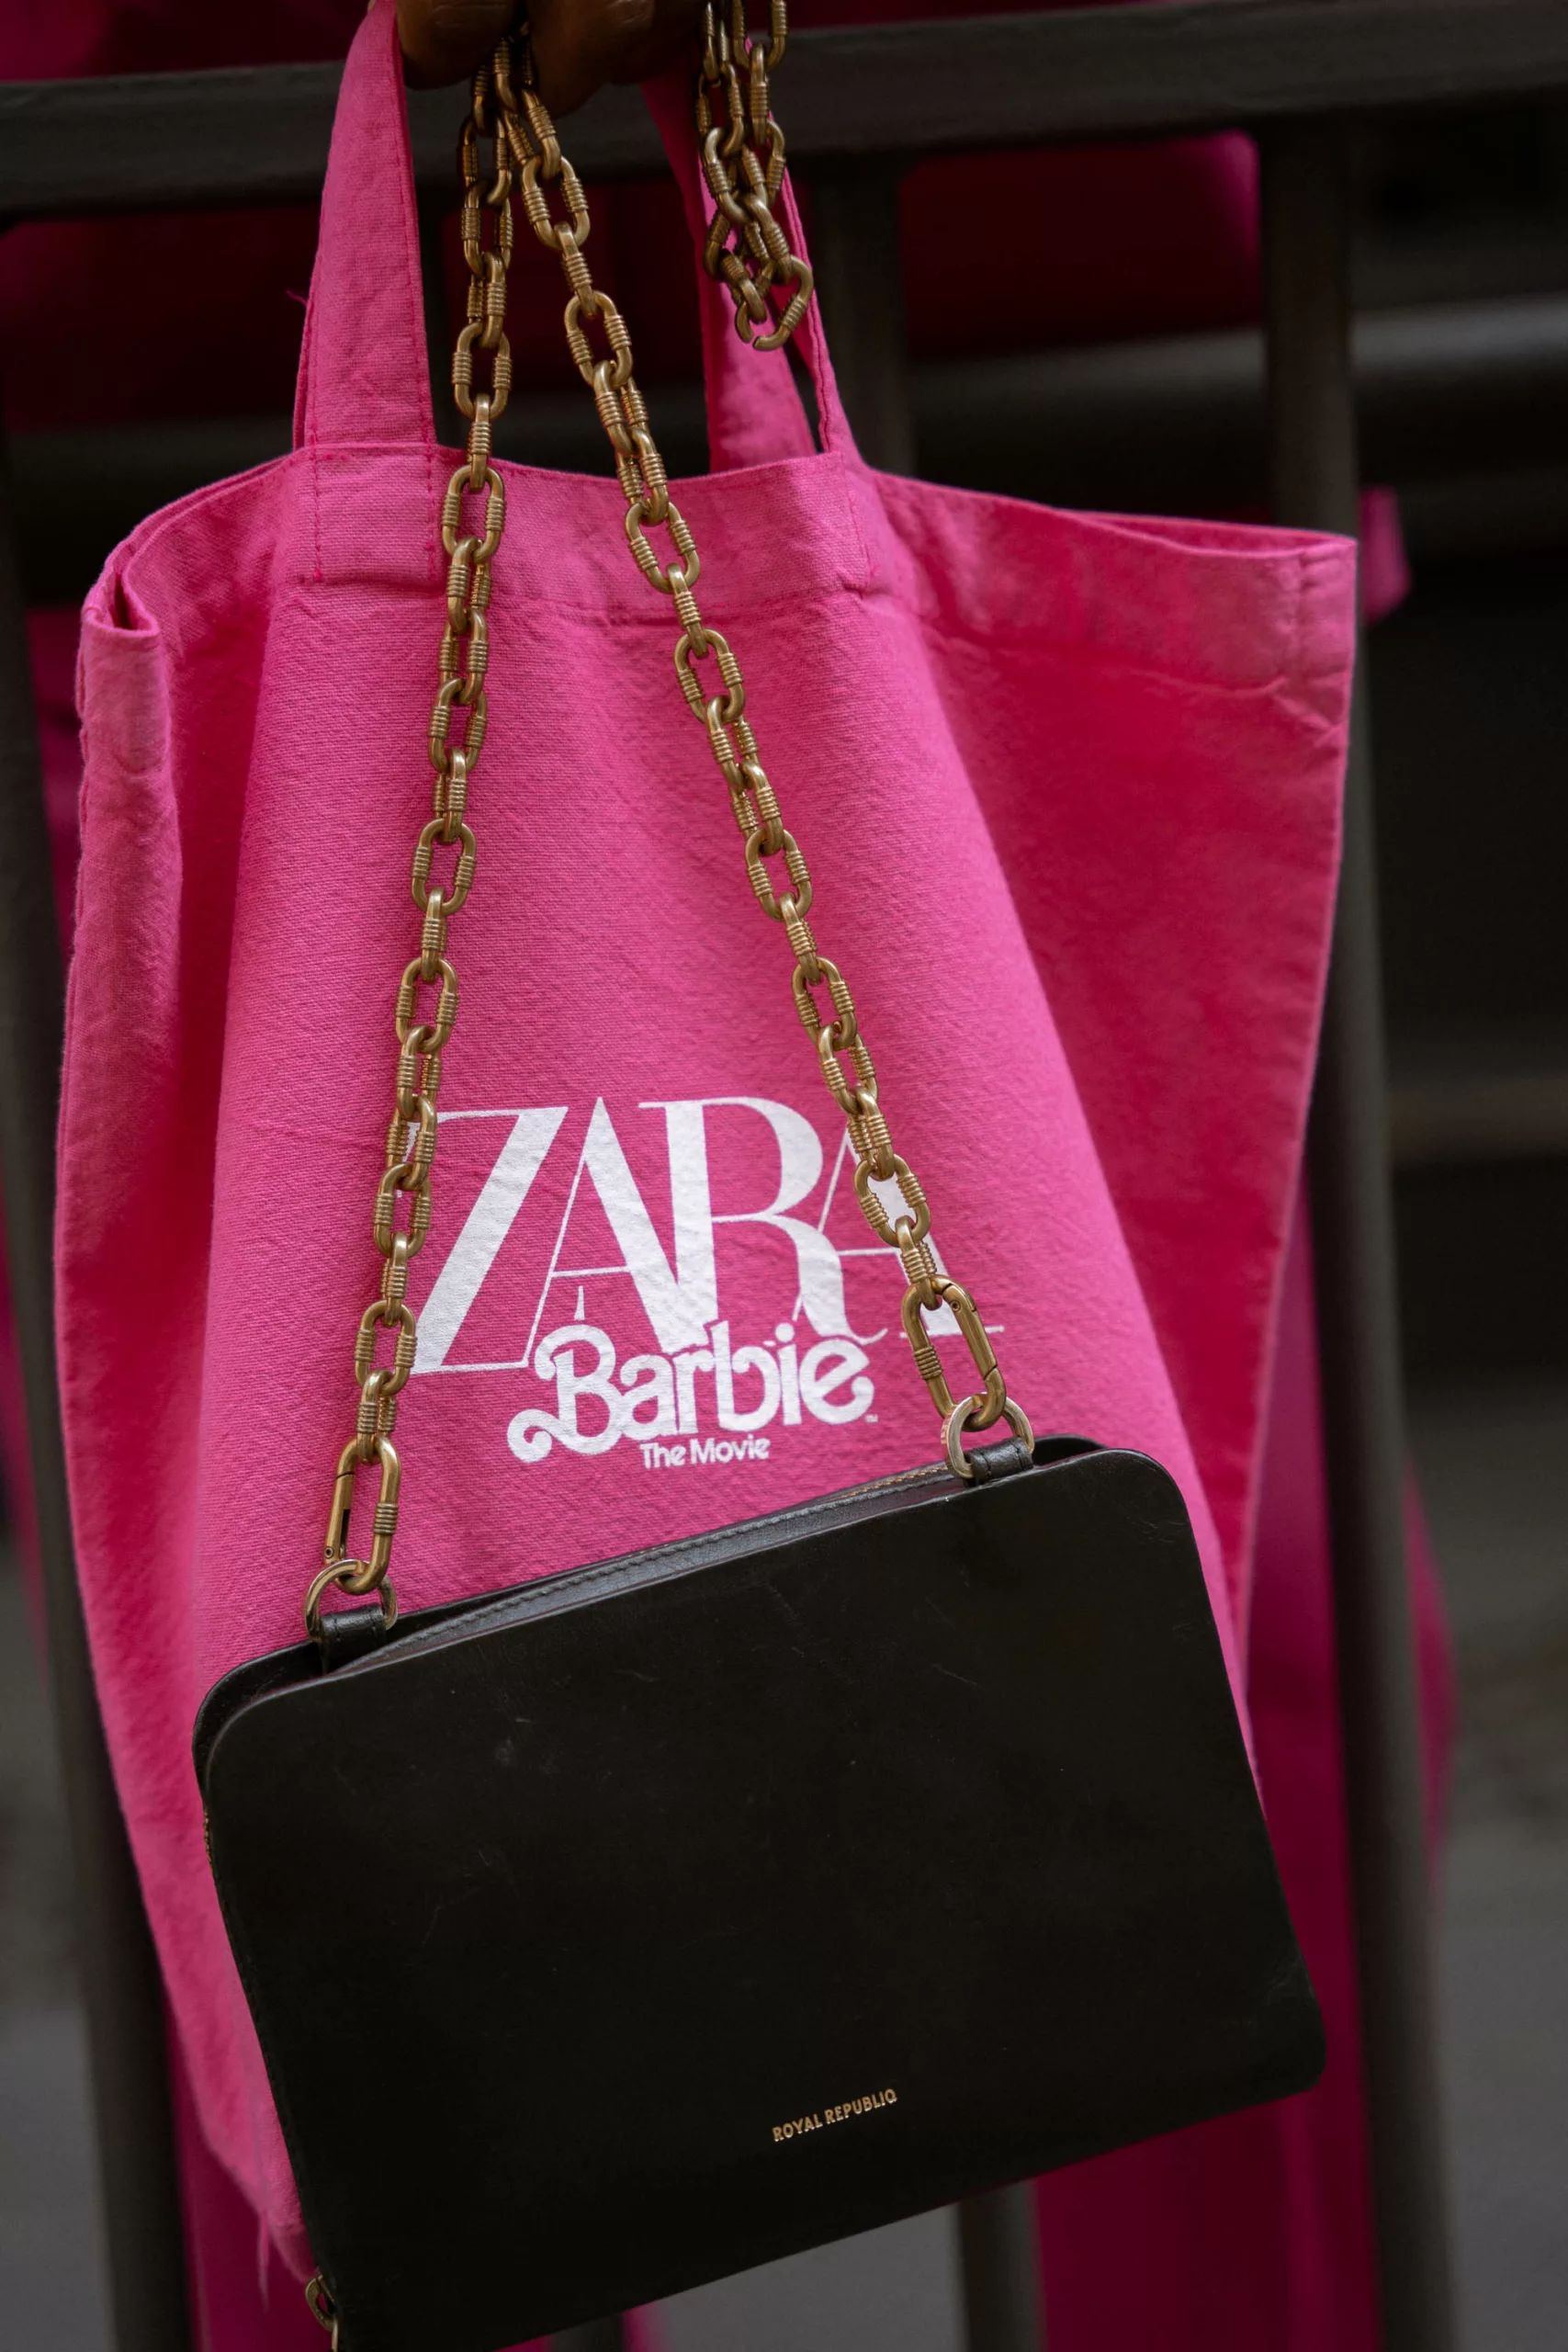 A coleção da Barbie na Zara chega hoje às lojas » STEAL THE LOOK